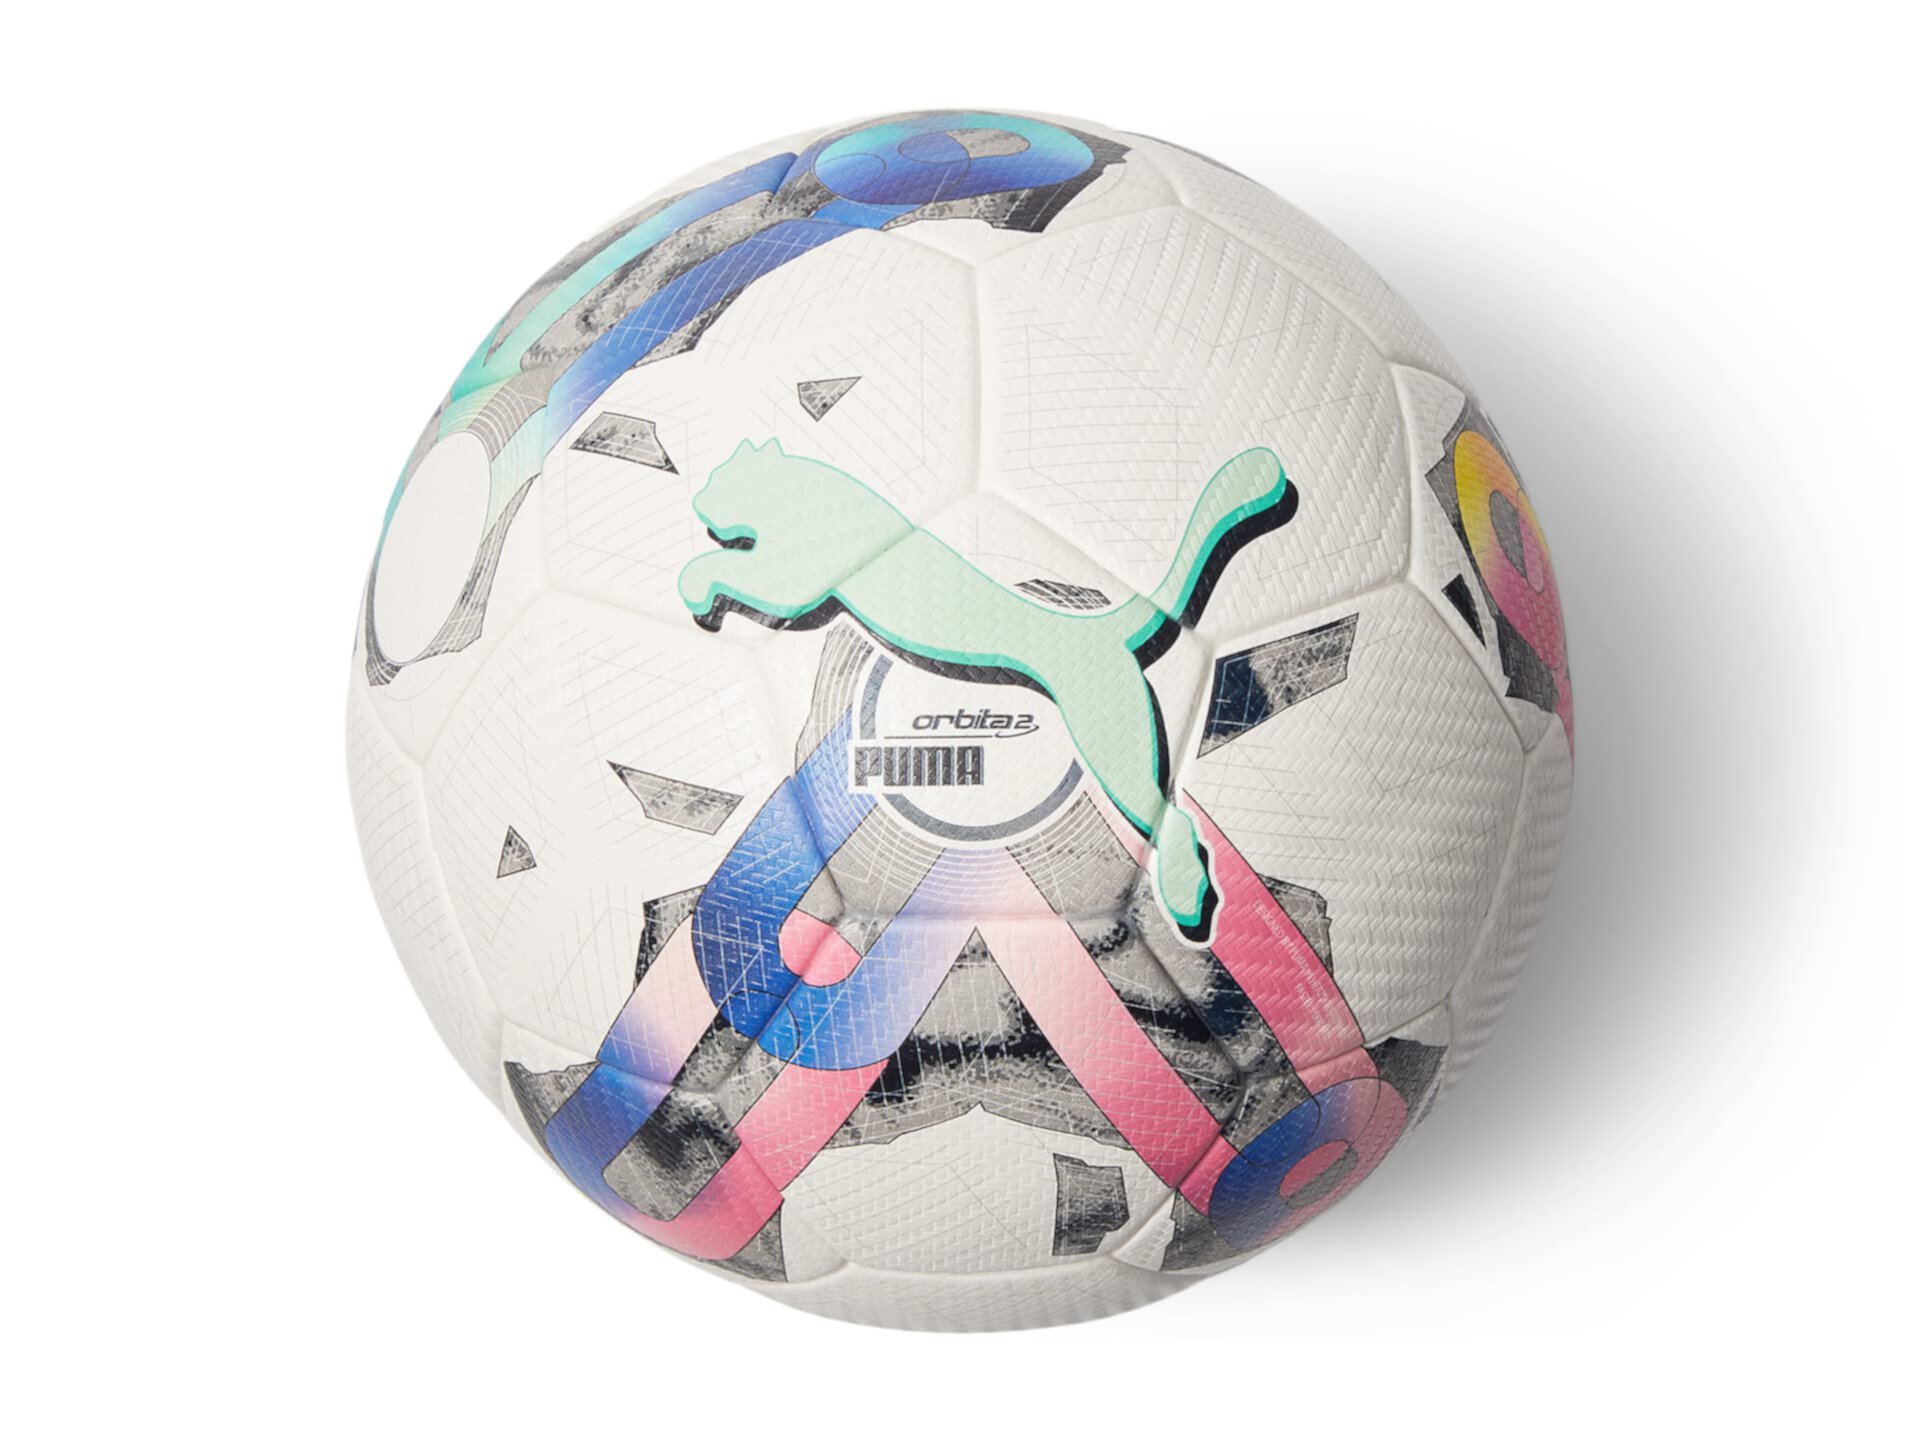 Футбольный мяч fifa quality pro. Футбольный мяч Puma laliga1 adrenalina. Мяч футбольный Puma orbita 3 TB №4 FIFA quality.